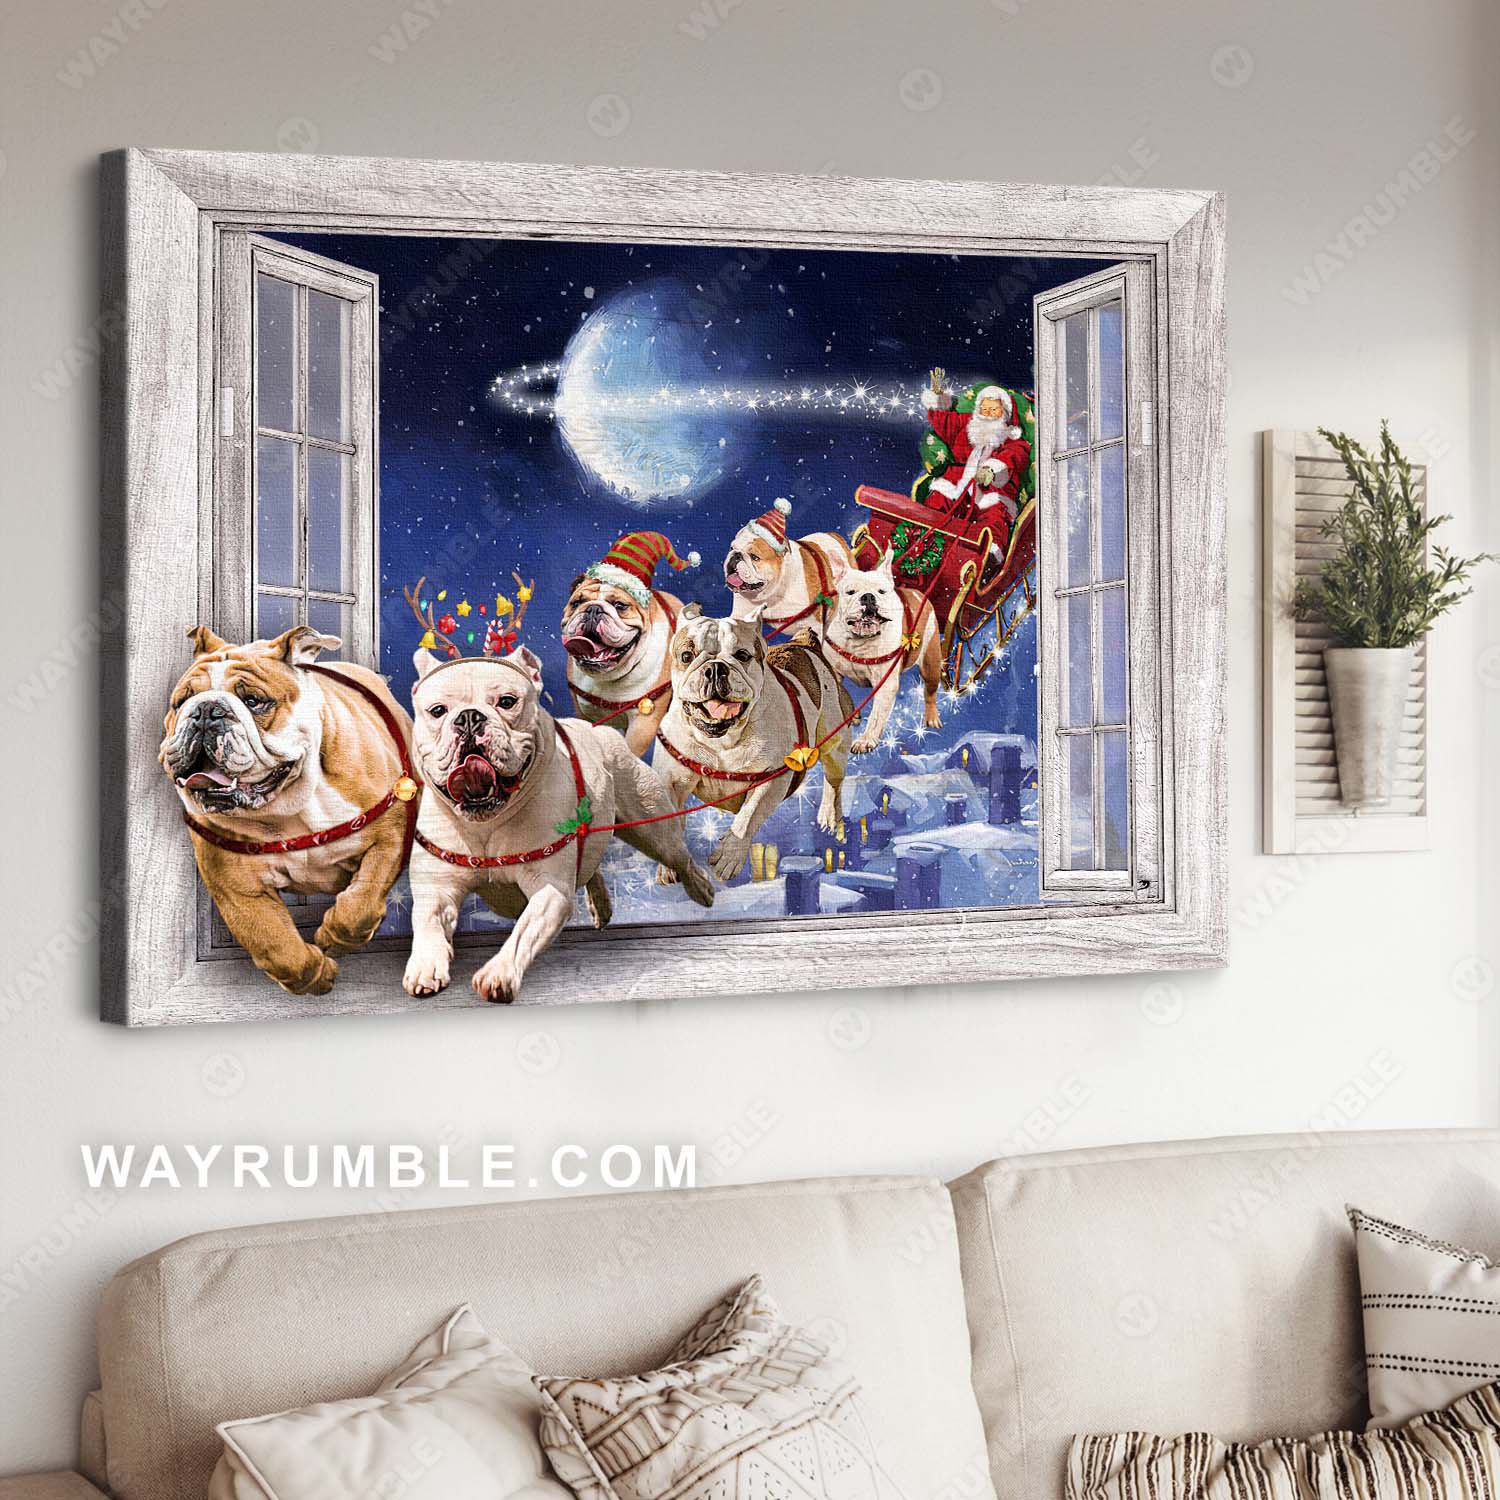 English Bulldog, Christmas painting, Santa Claus - Bulldog Landscape Canvas Prints, Wall Art 